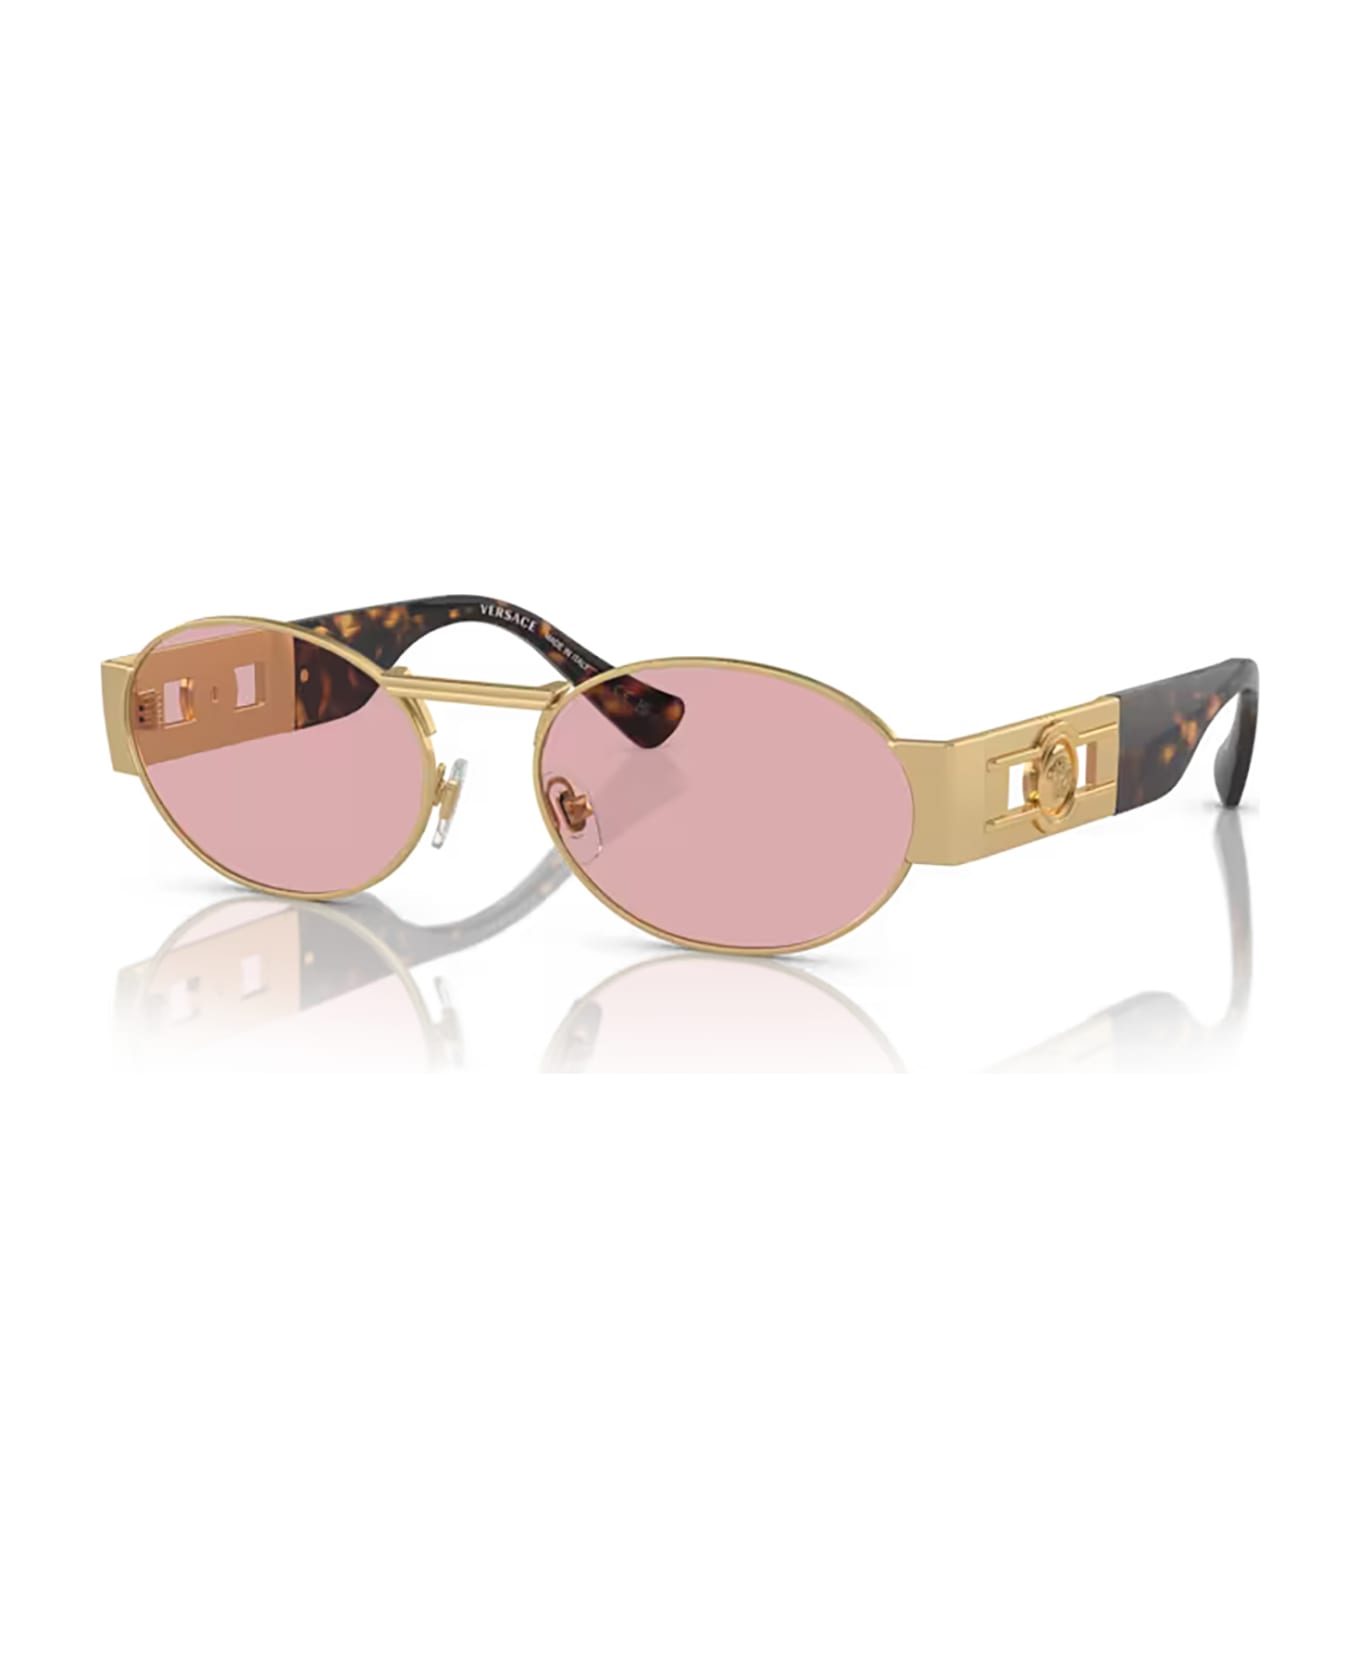 Versace Eyewear Ve2264 Matte Gold Sunglasses - Matte gold